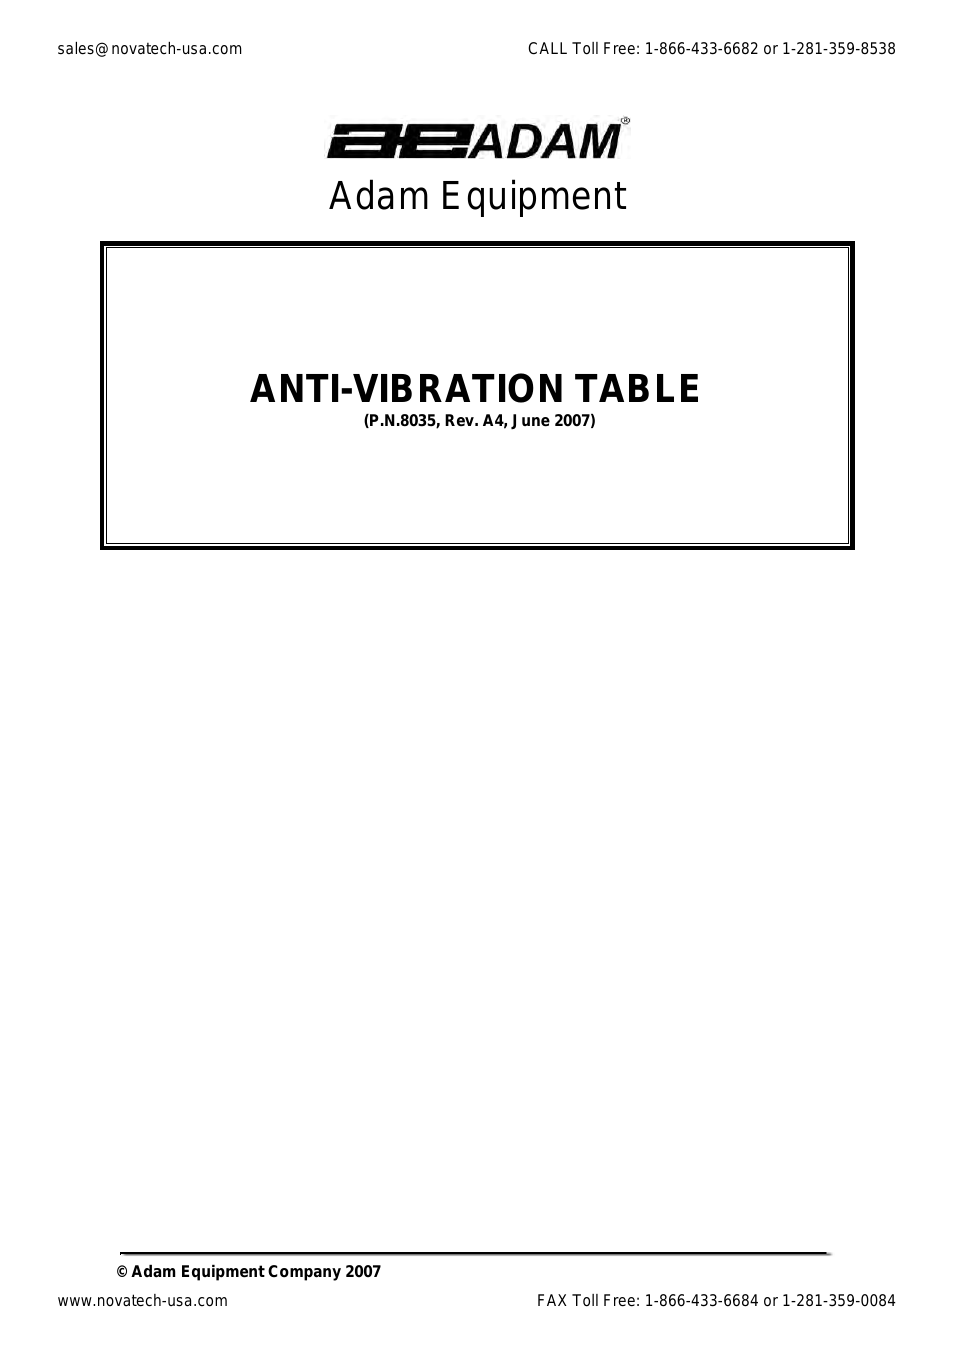 Anti-Vibration Table